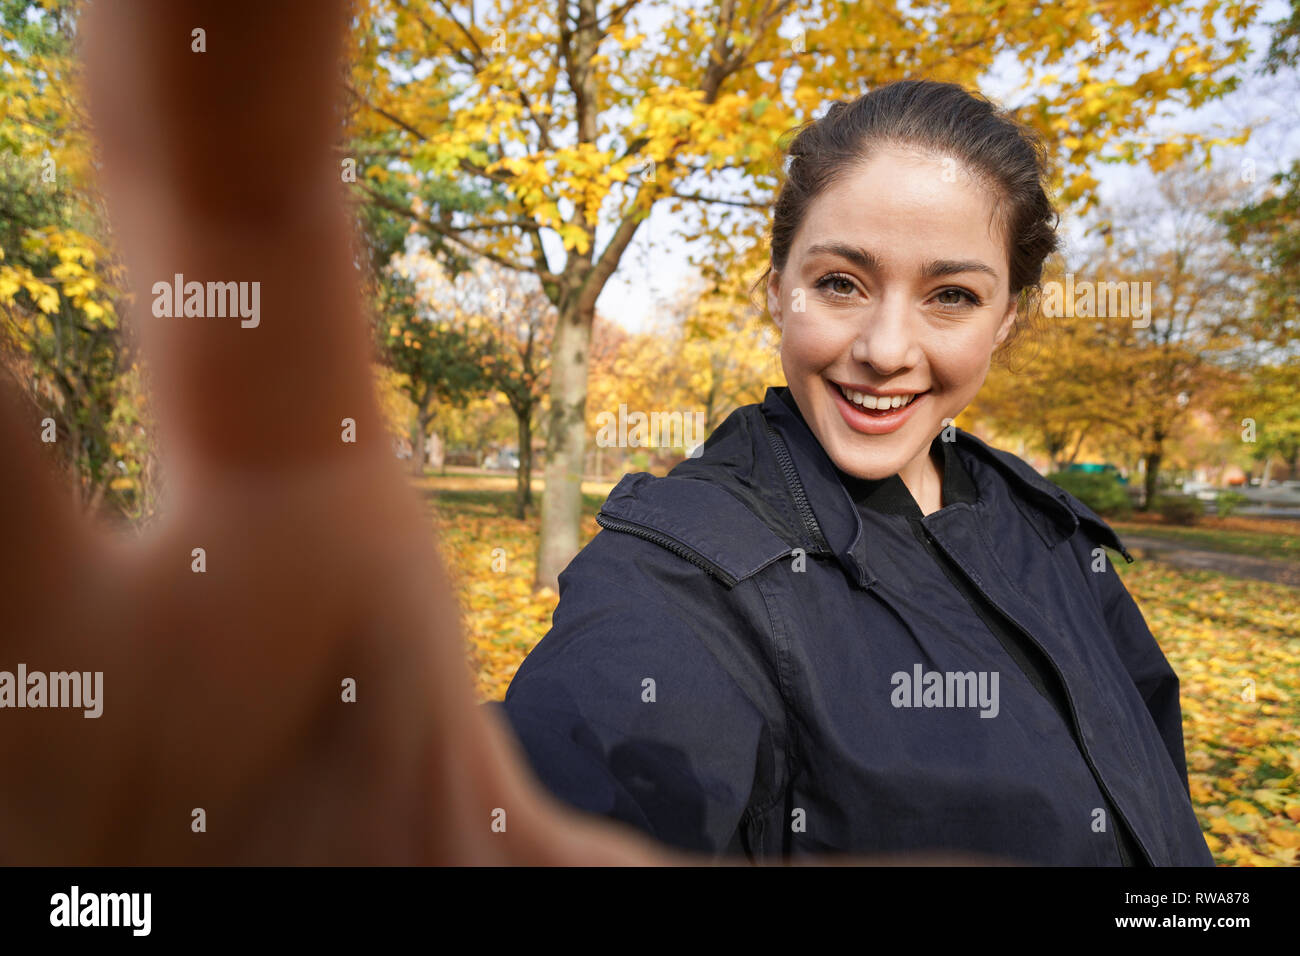 Glückliche junge Frau, die Selfie-Foto im Park mit Herbstfarben macht Stockfoto